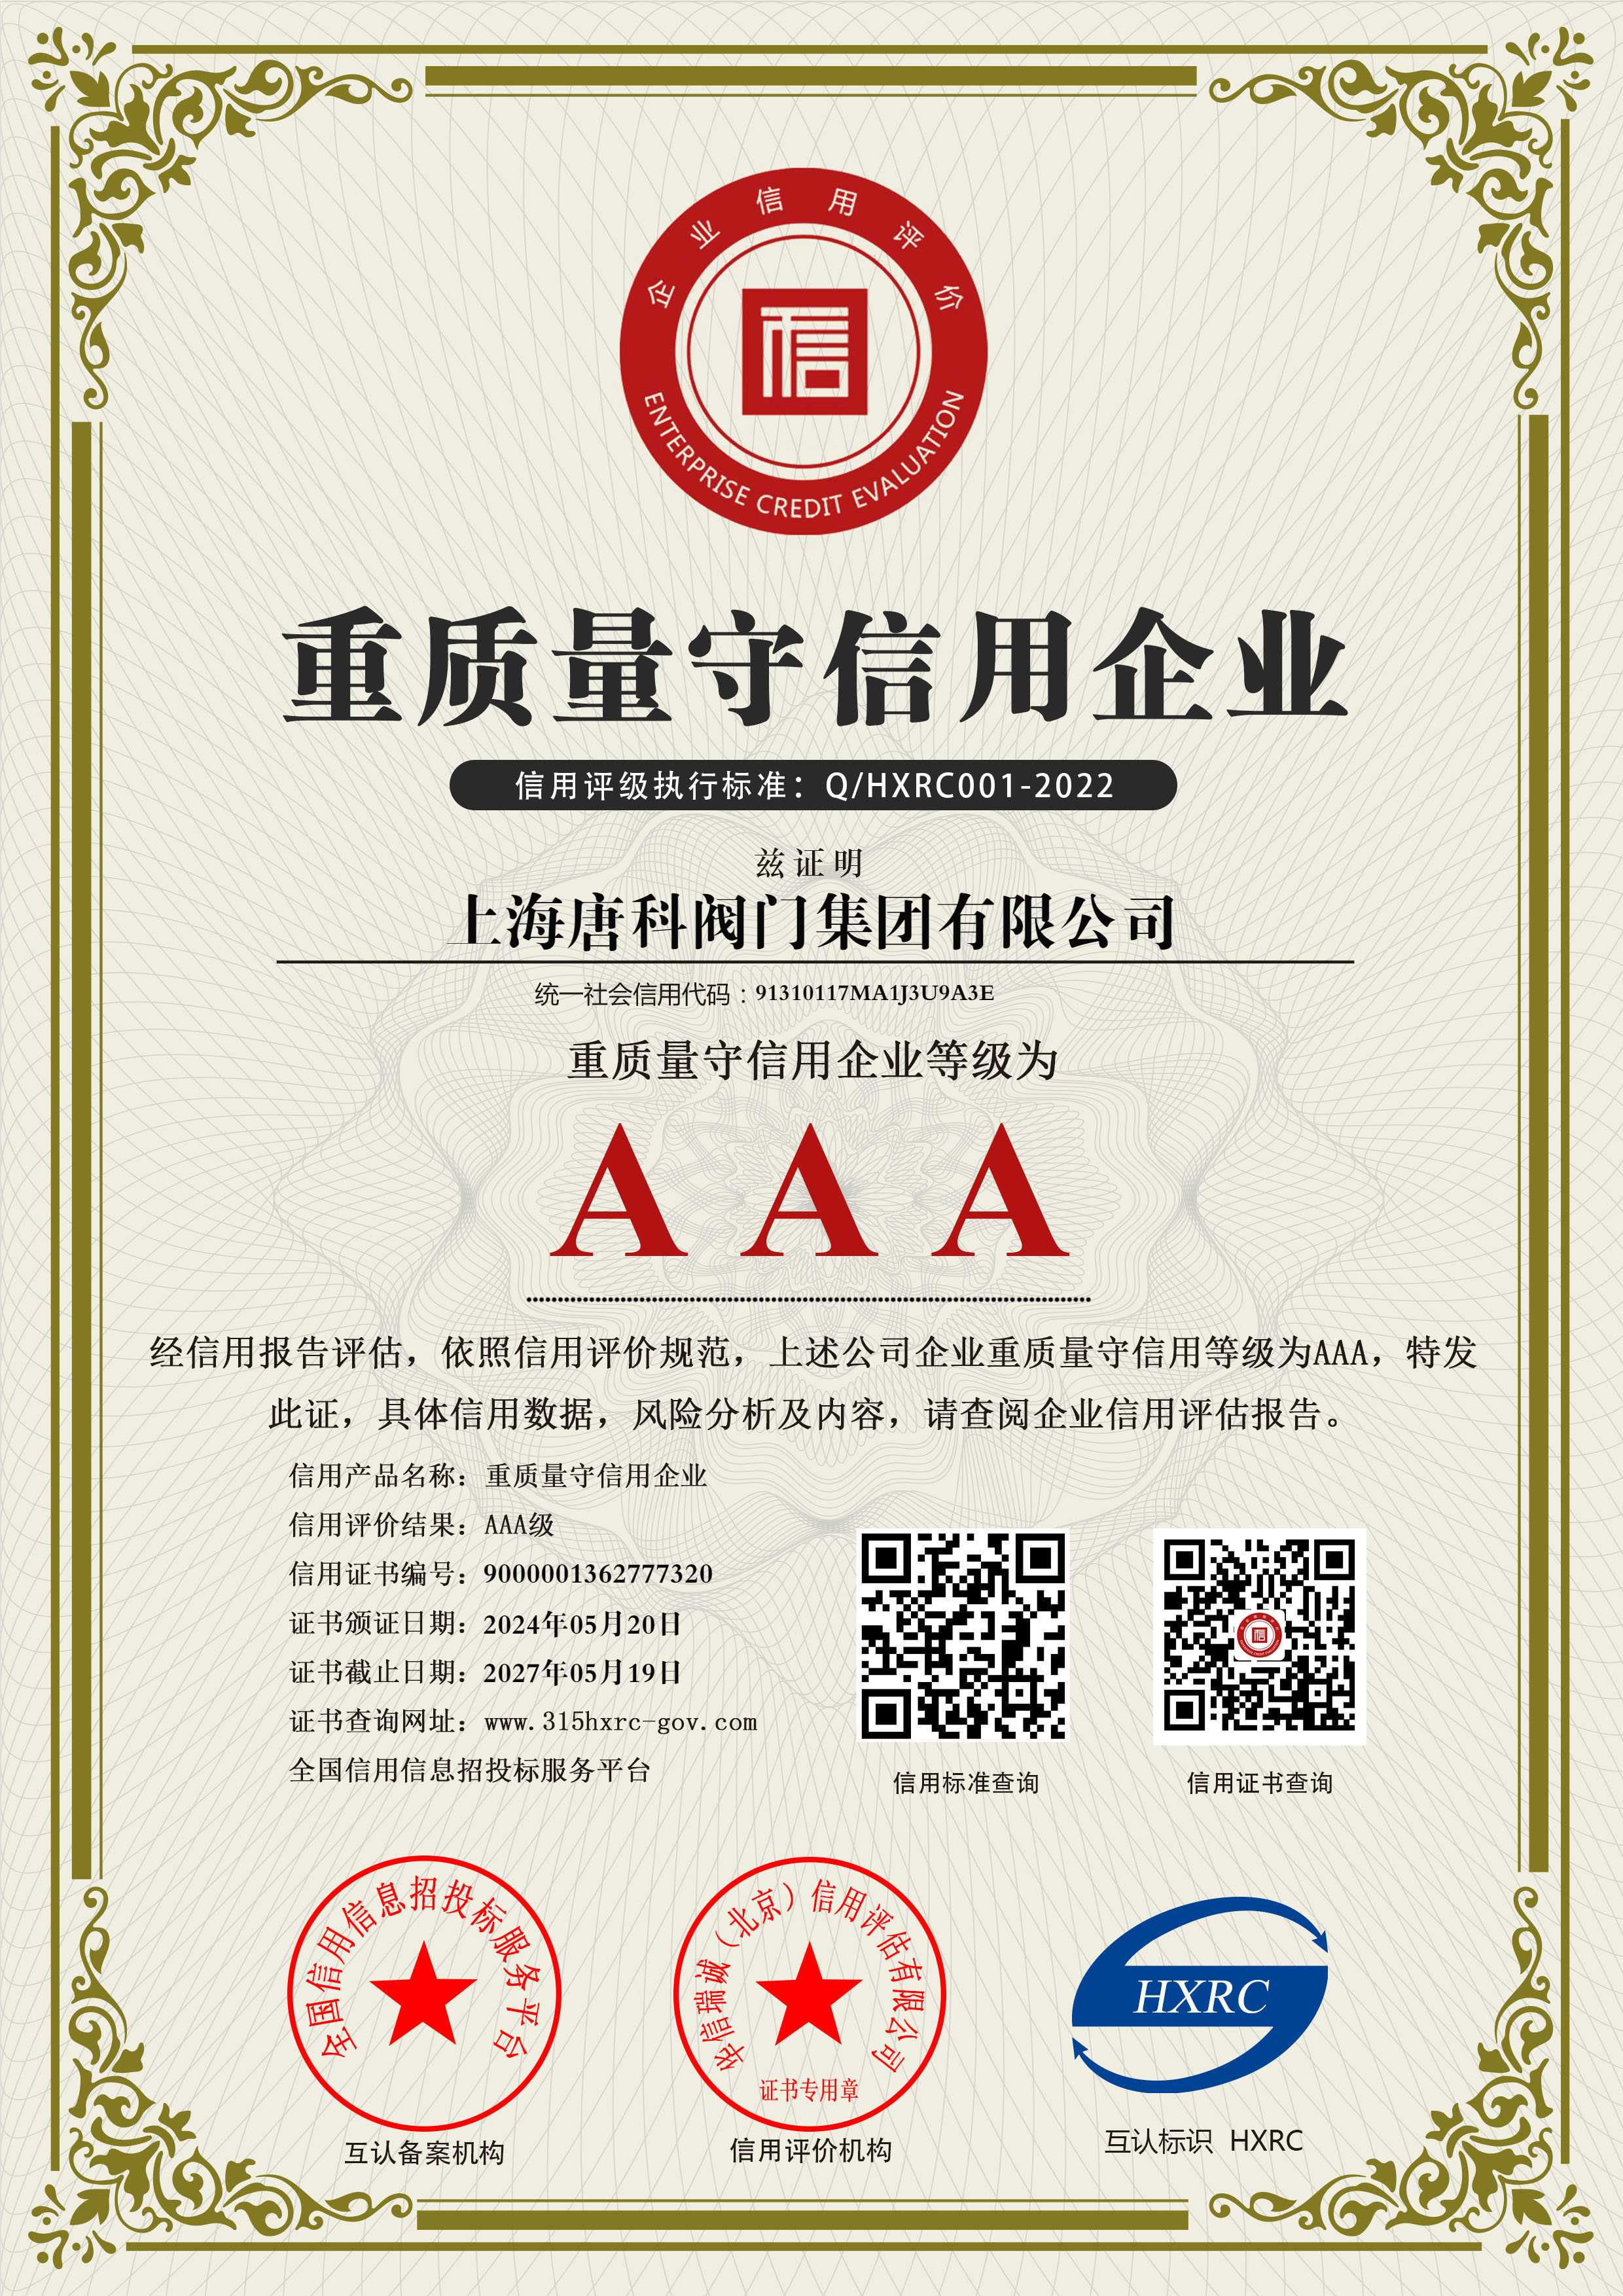 6 上海唐科閥門集團有限公司-AAA級重質量守信用企業-新版